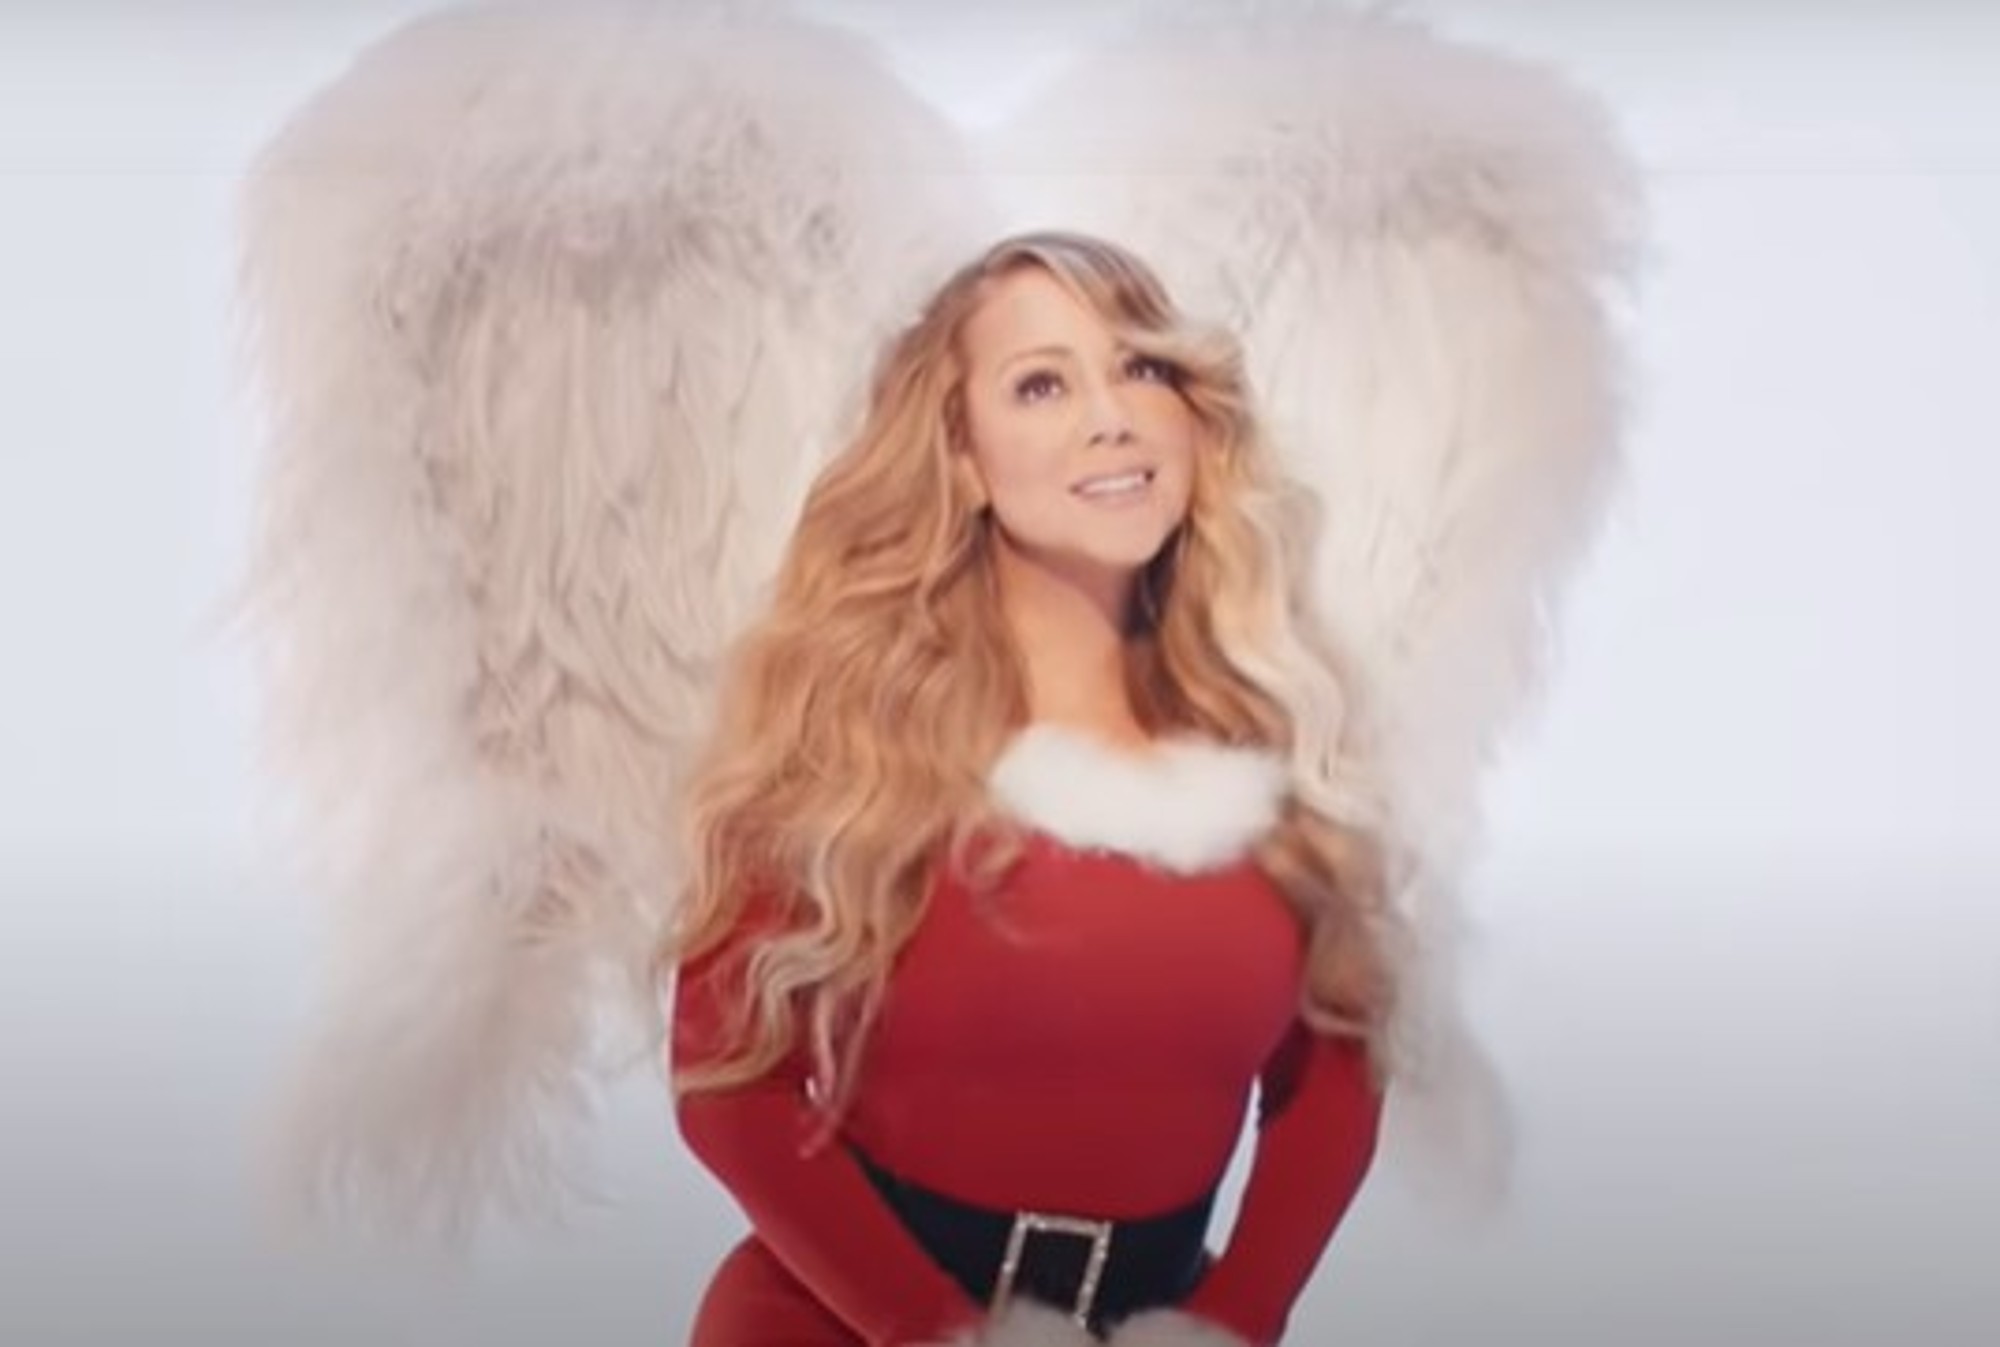 Mariah Carey en el video de "All I Want for Christmas Is You".